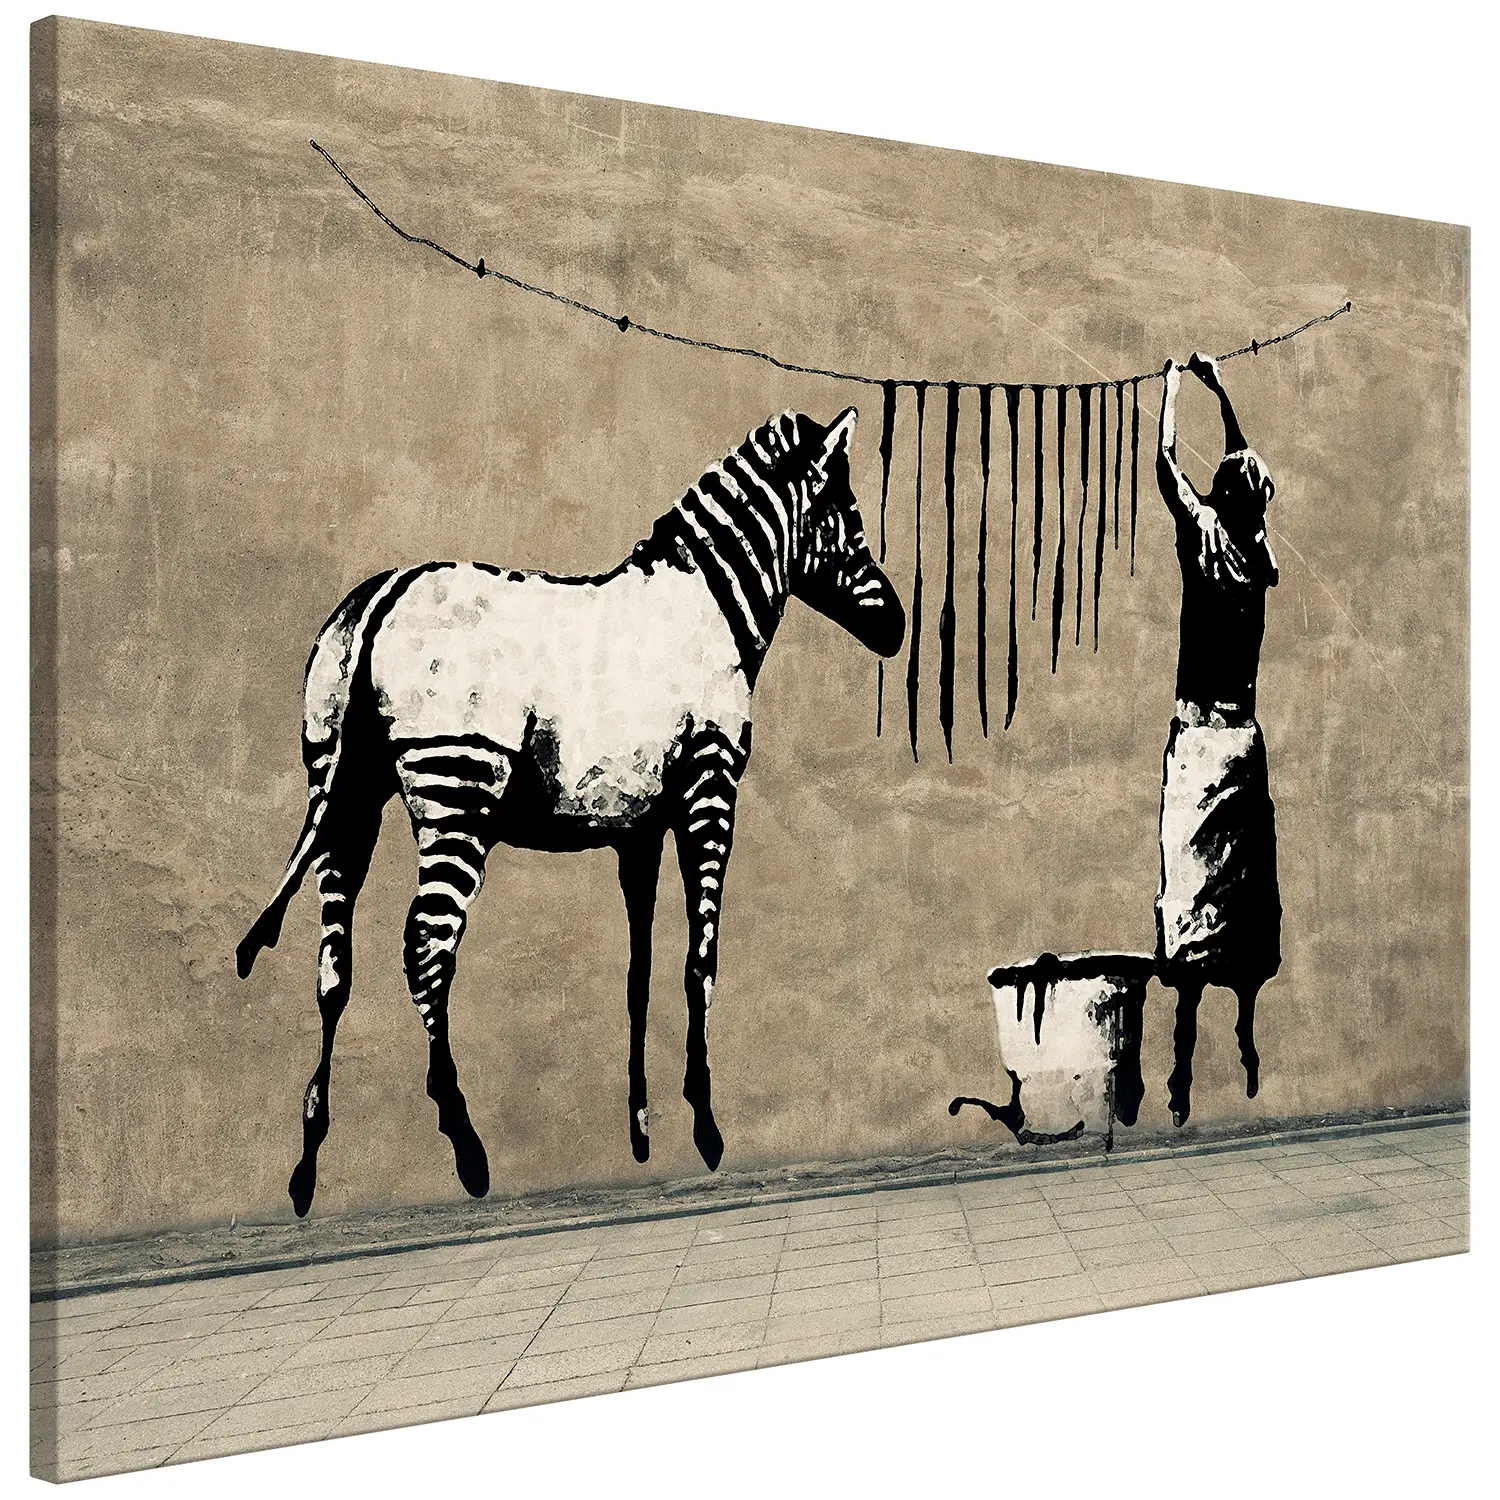 Concrete Washing Bild Zebra (Banksy) on